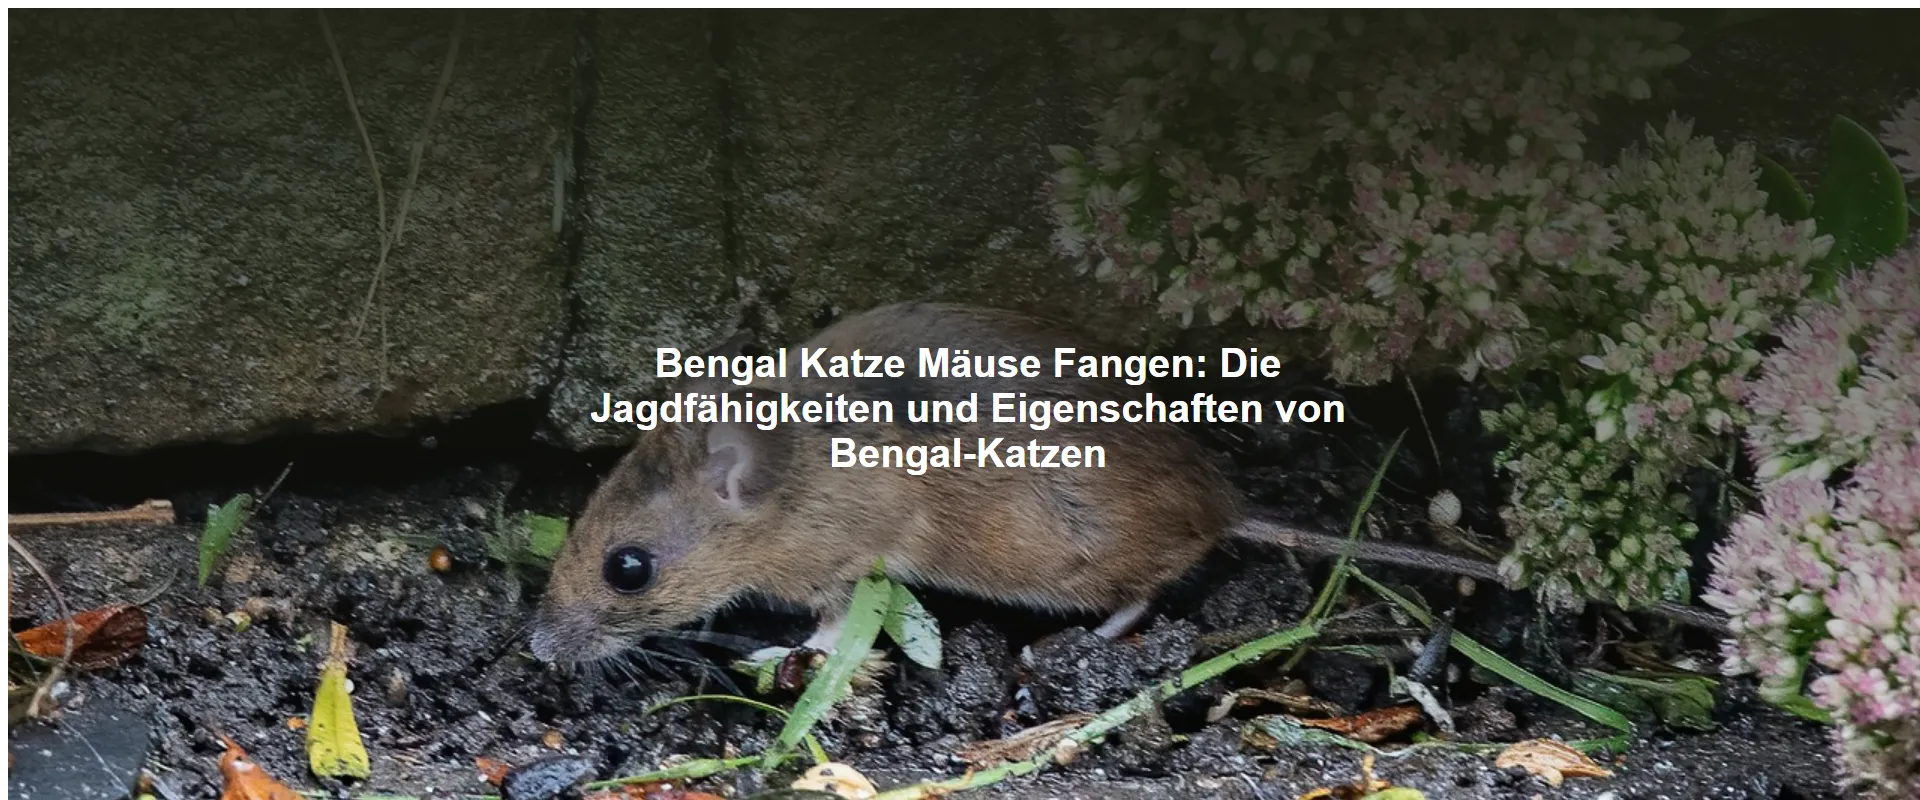 Bengal Katze Mäuse Fangen – Die Jagdfähigkeiten und Eigenschaften von Bengal-Katzen